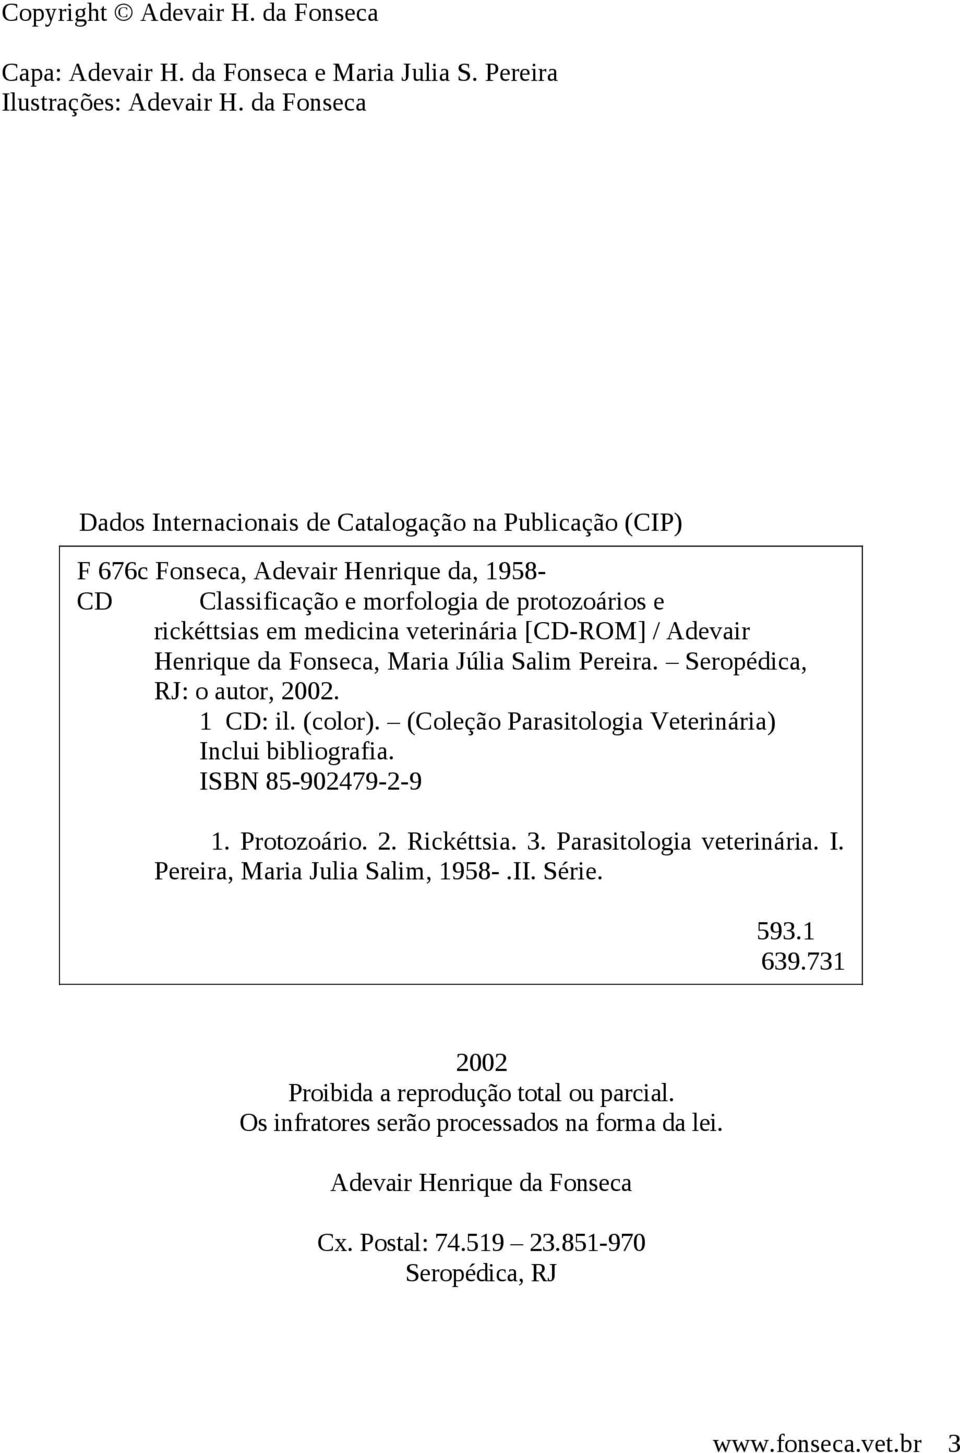 [CD-ROM] / Adevair Henrique da Fonseca, Maria Júlia Salim Pereira. Seropédica, RJ: o autor, 2002. 1 CD: il. (color). (Coleção Parasitologia Veterinária) Inclui bibliografia. ISBN 85-902479-2-9 1.